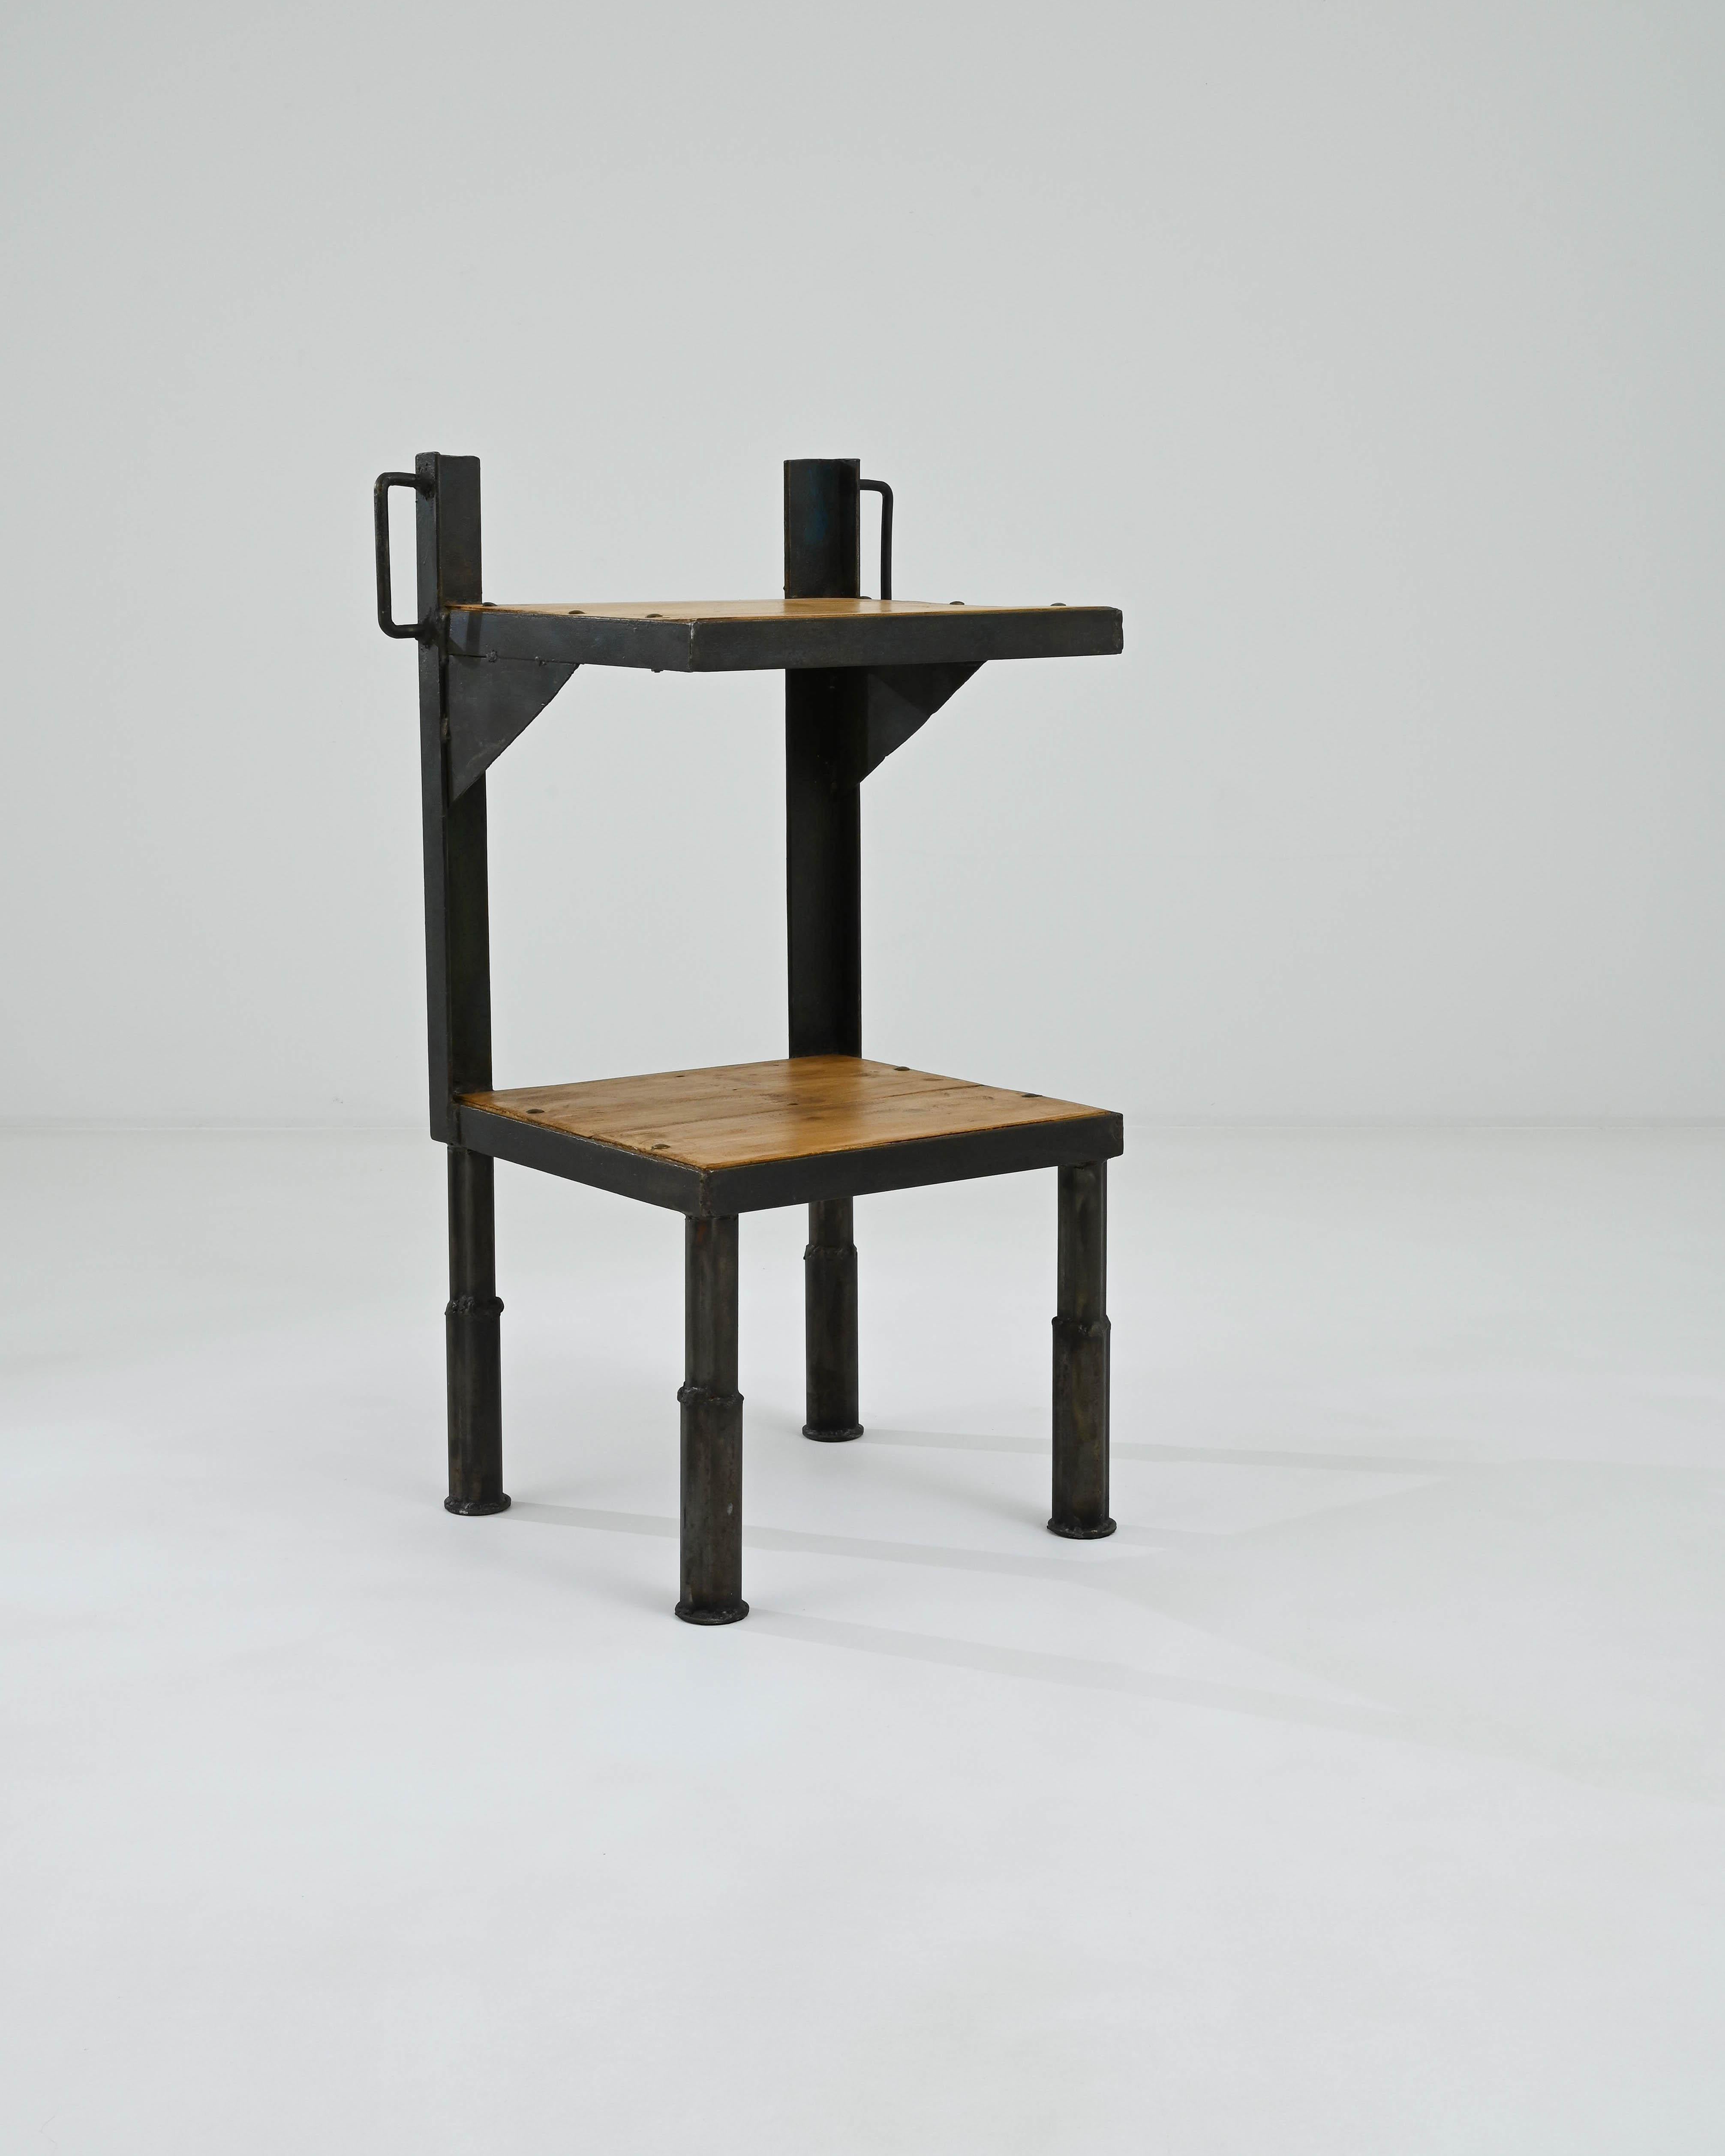 Dieser Vintage-Tisch setzt einen auffälligen Industrial-Akzent. Die im 20. Jahrhundert in Frankreich hergestellte Form ist streng architektonisch: Stahlträger stützen ein Paar Plattformen, die mit Metallbändern eingefasst sind. Quadratische Beine